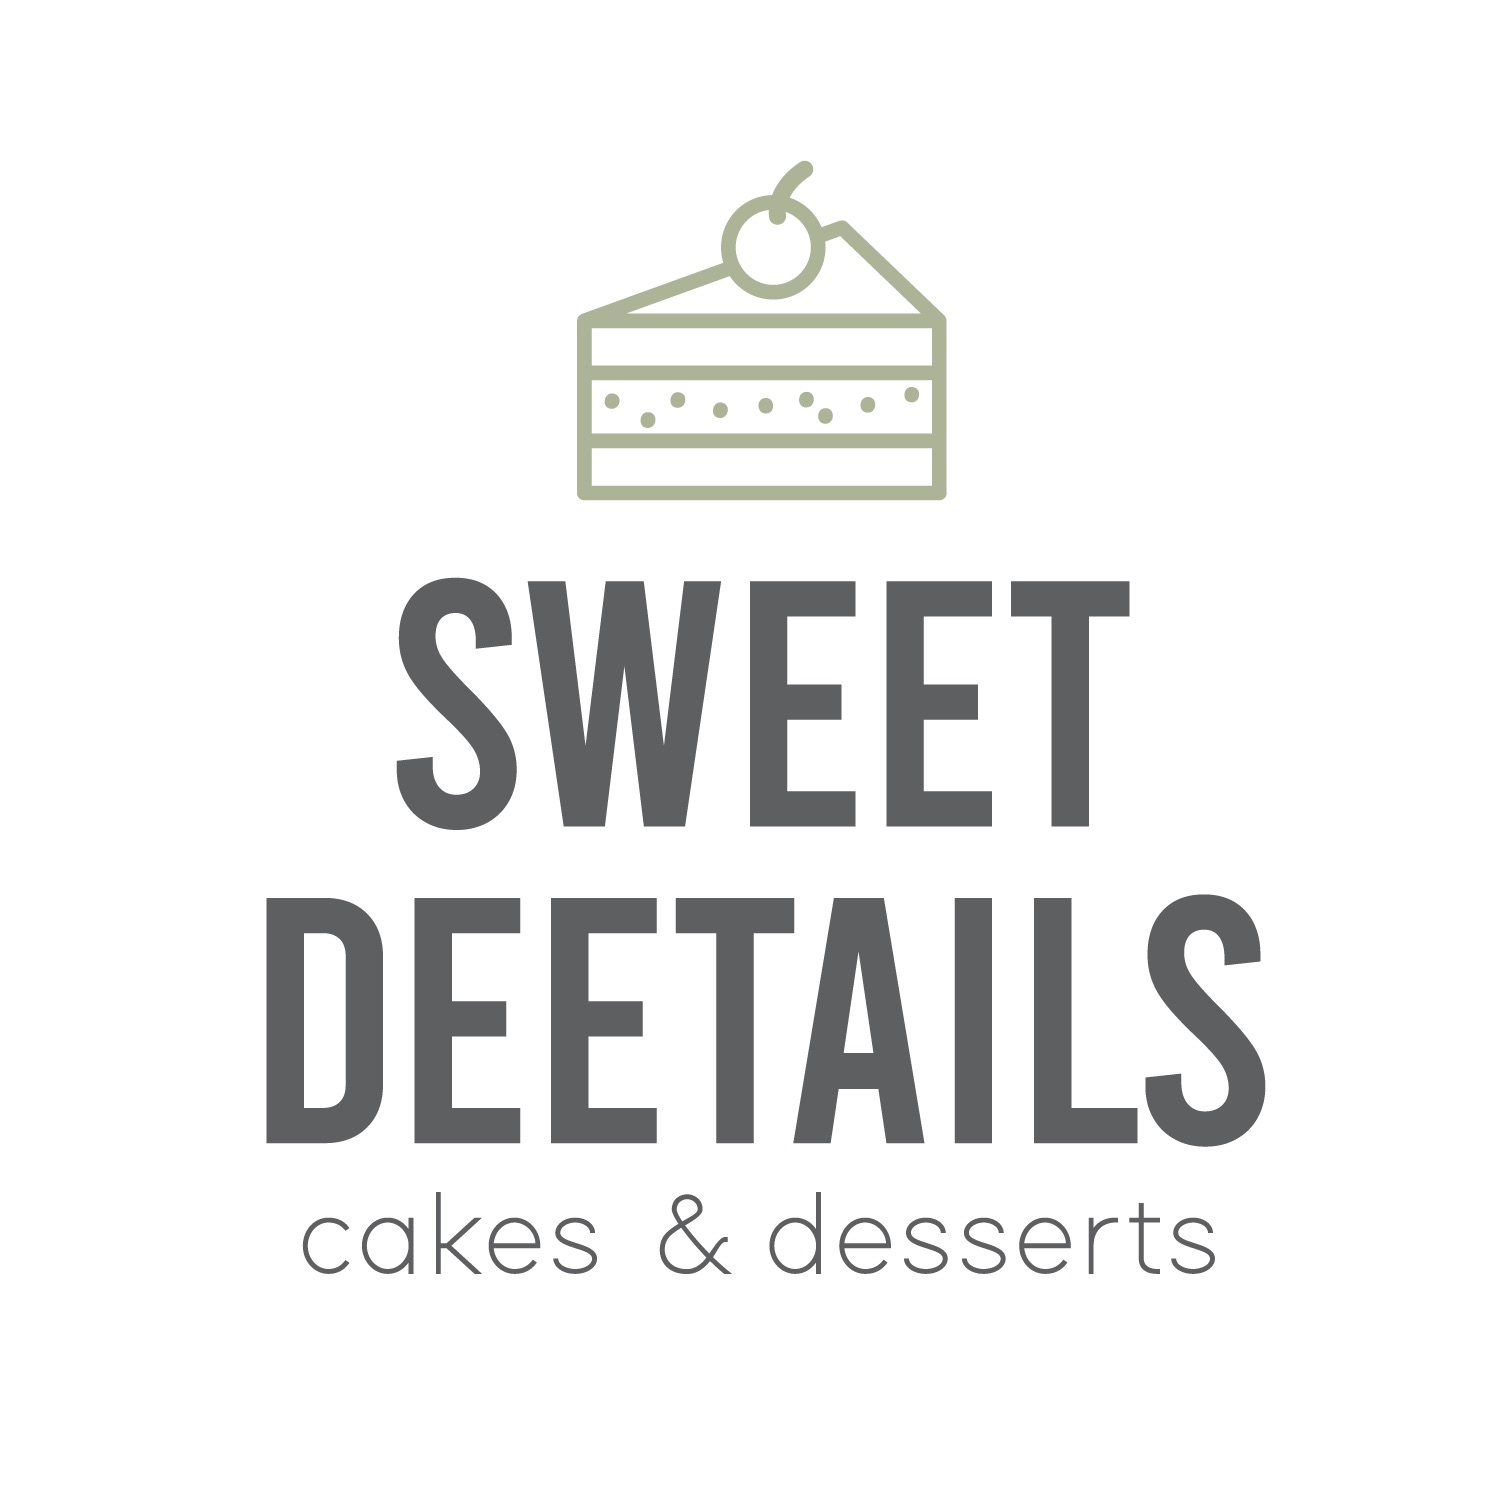 Sweet Deetails